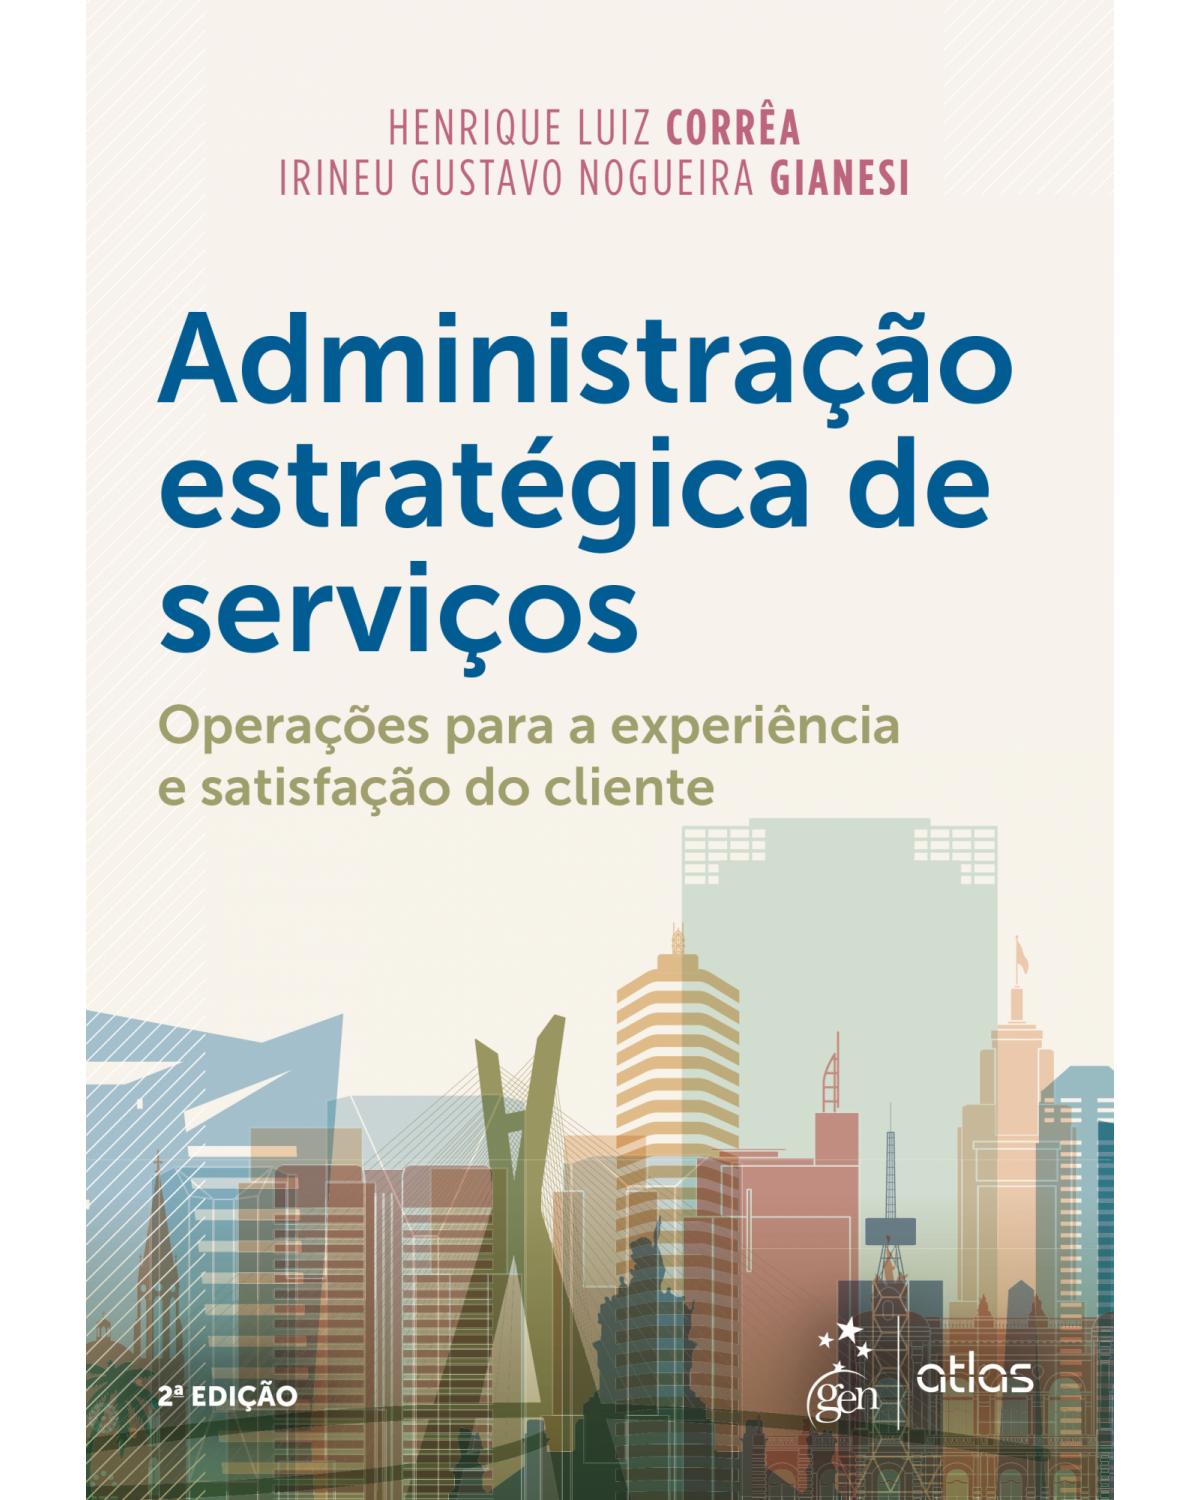 Administração estratégica de serviços - operações para a experiência e satisfação do cliente - 2ª Edição | 2018